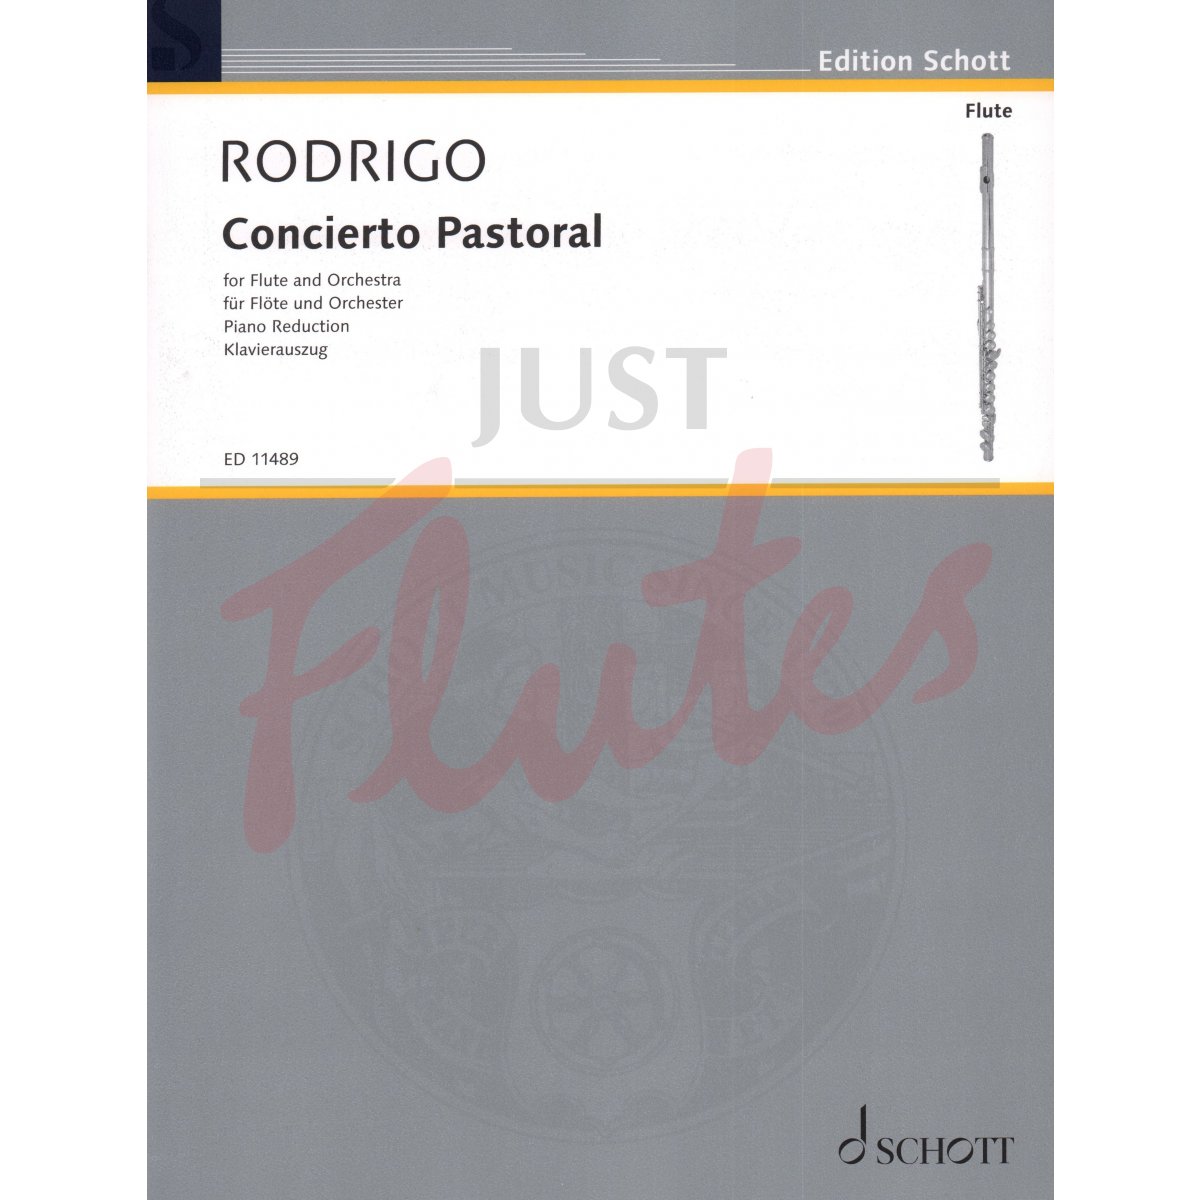 Concierto Pastoral for Flute and Piano